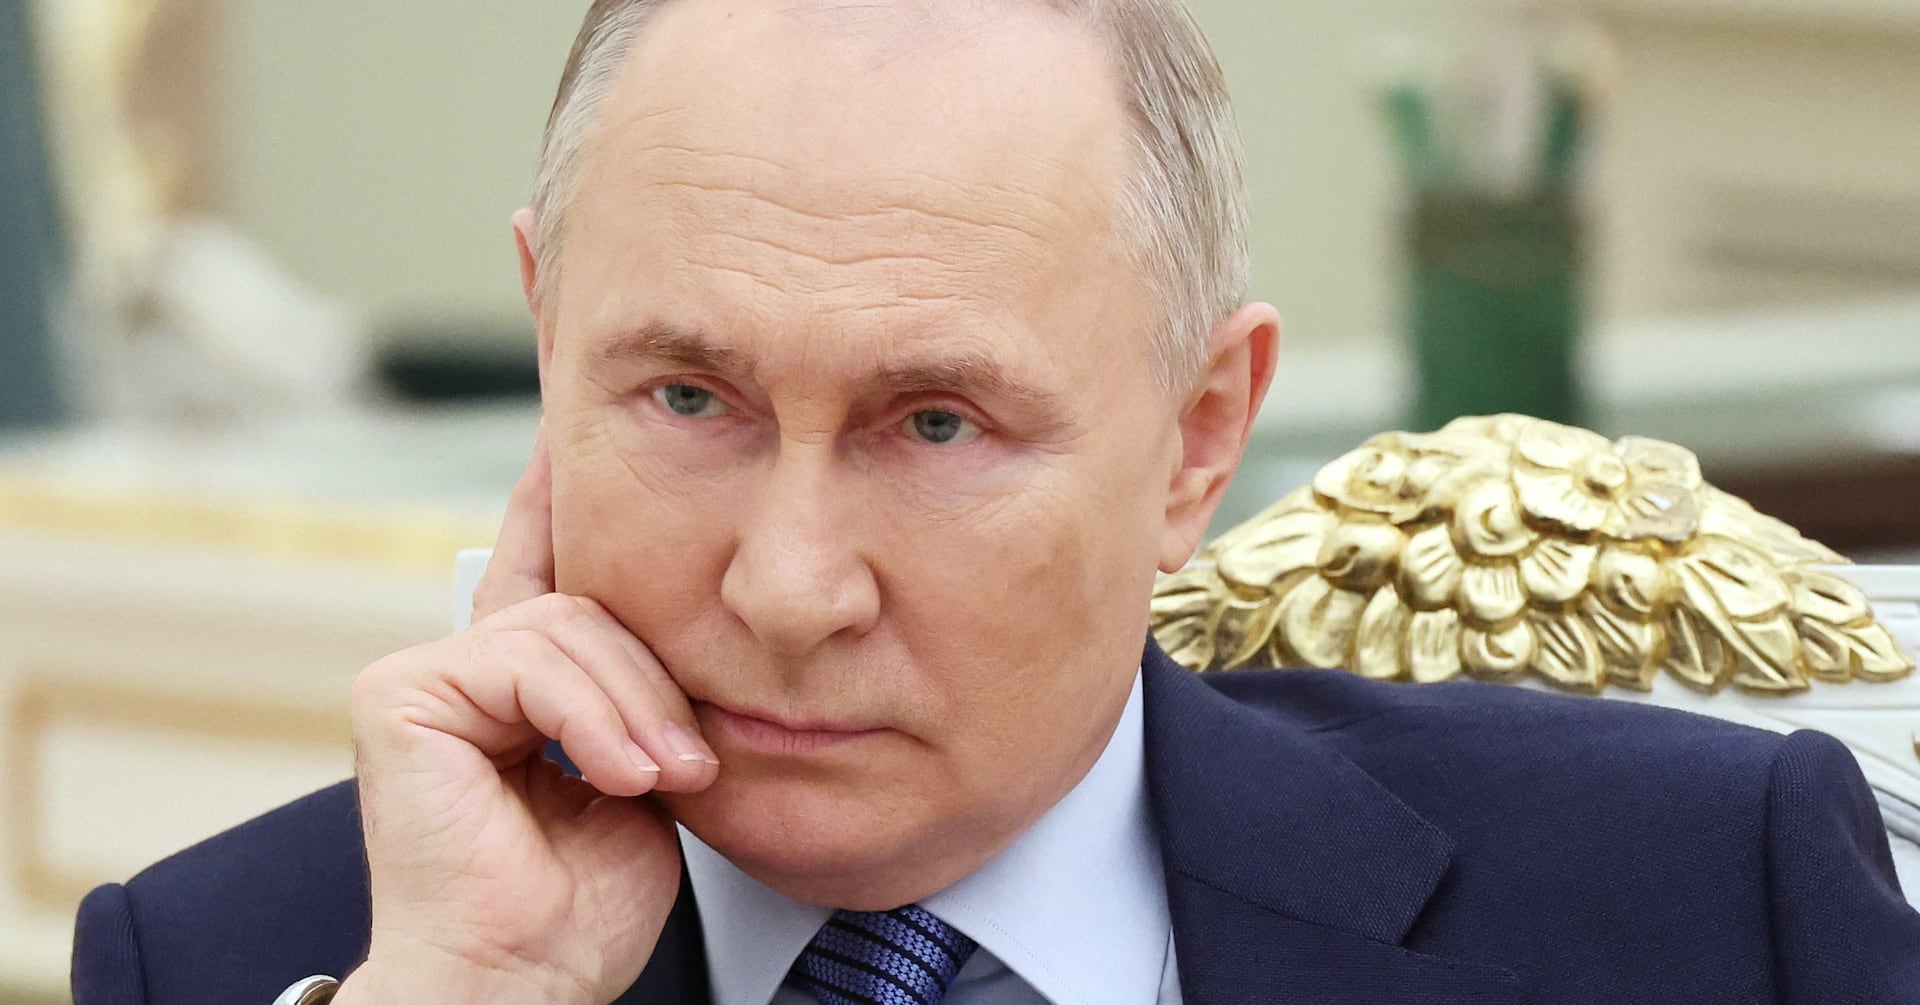 プーチン氏、ウクライナが大統領選妨害と非難 「必ず罰する」